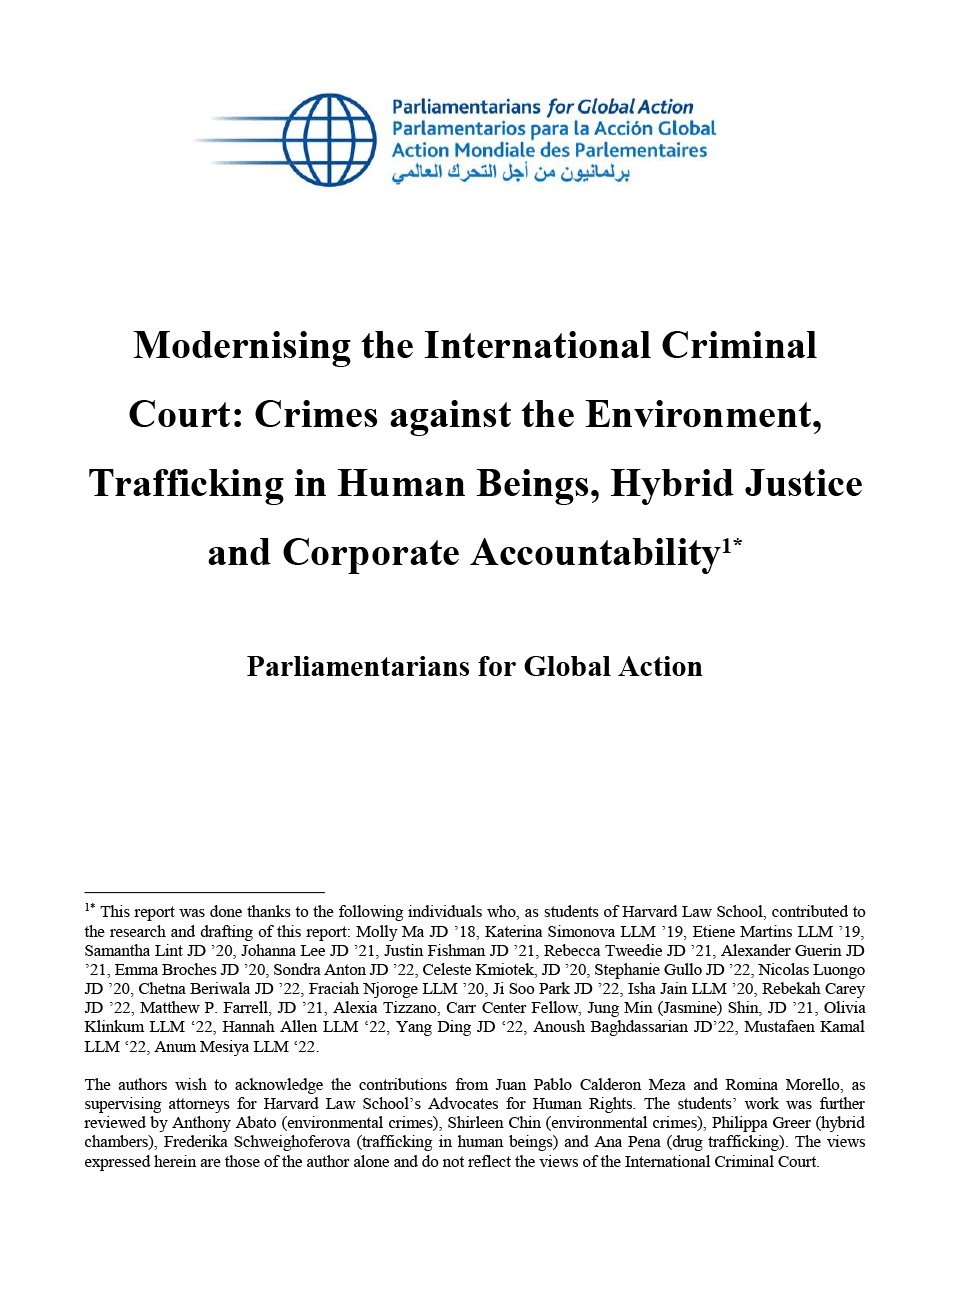 Moderniser la Cour pénale internationale : crimes contre l’environnement, traite des êtres humains, justice hybride et responsabilité des entreprises